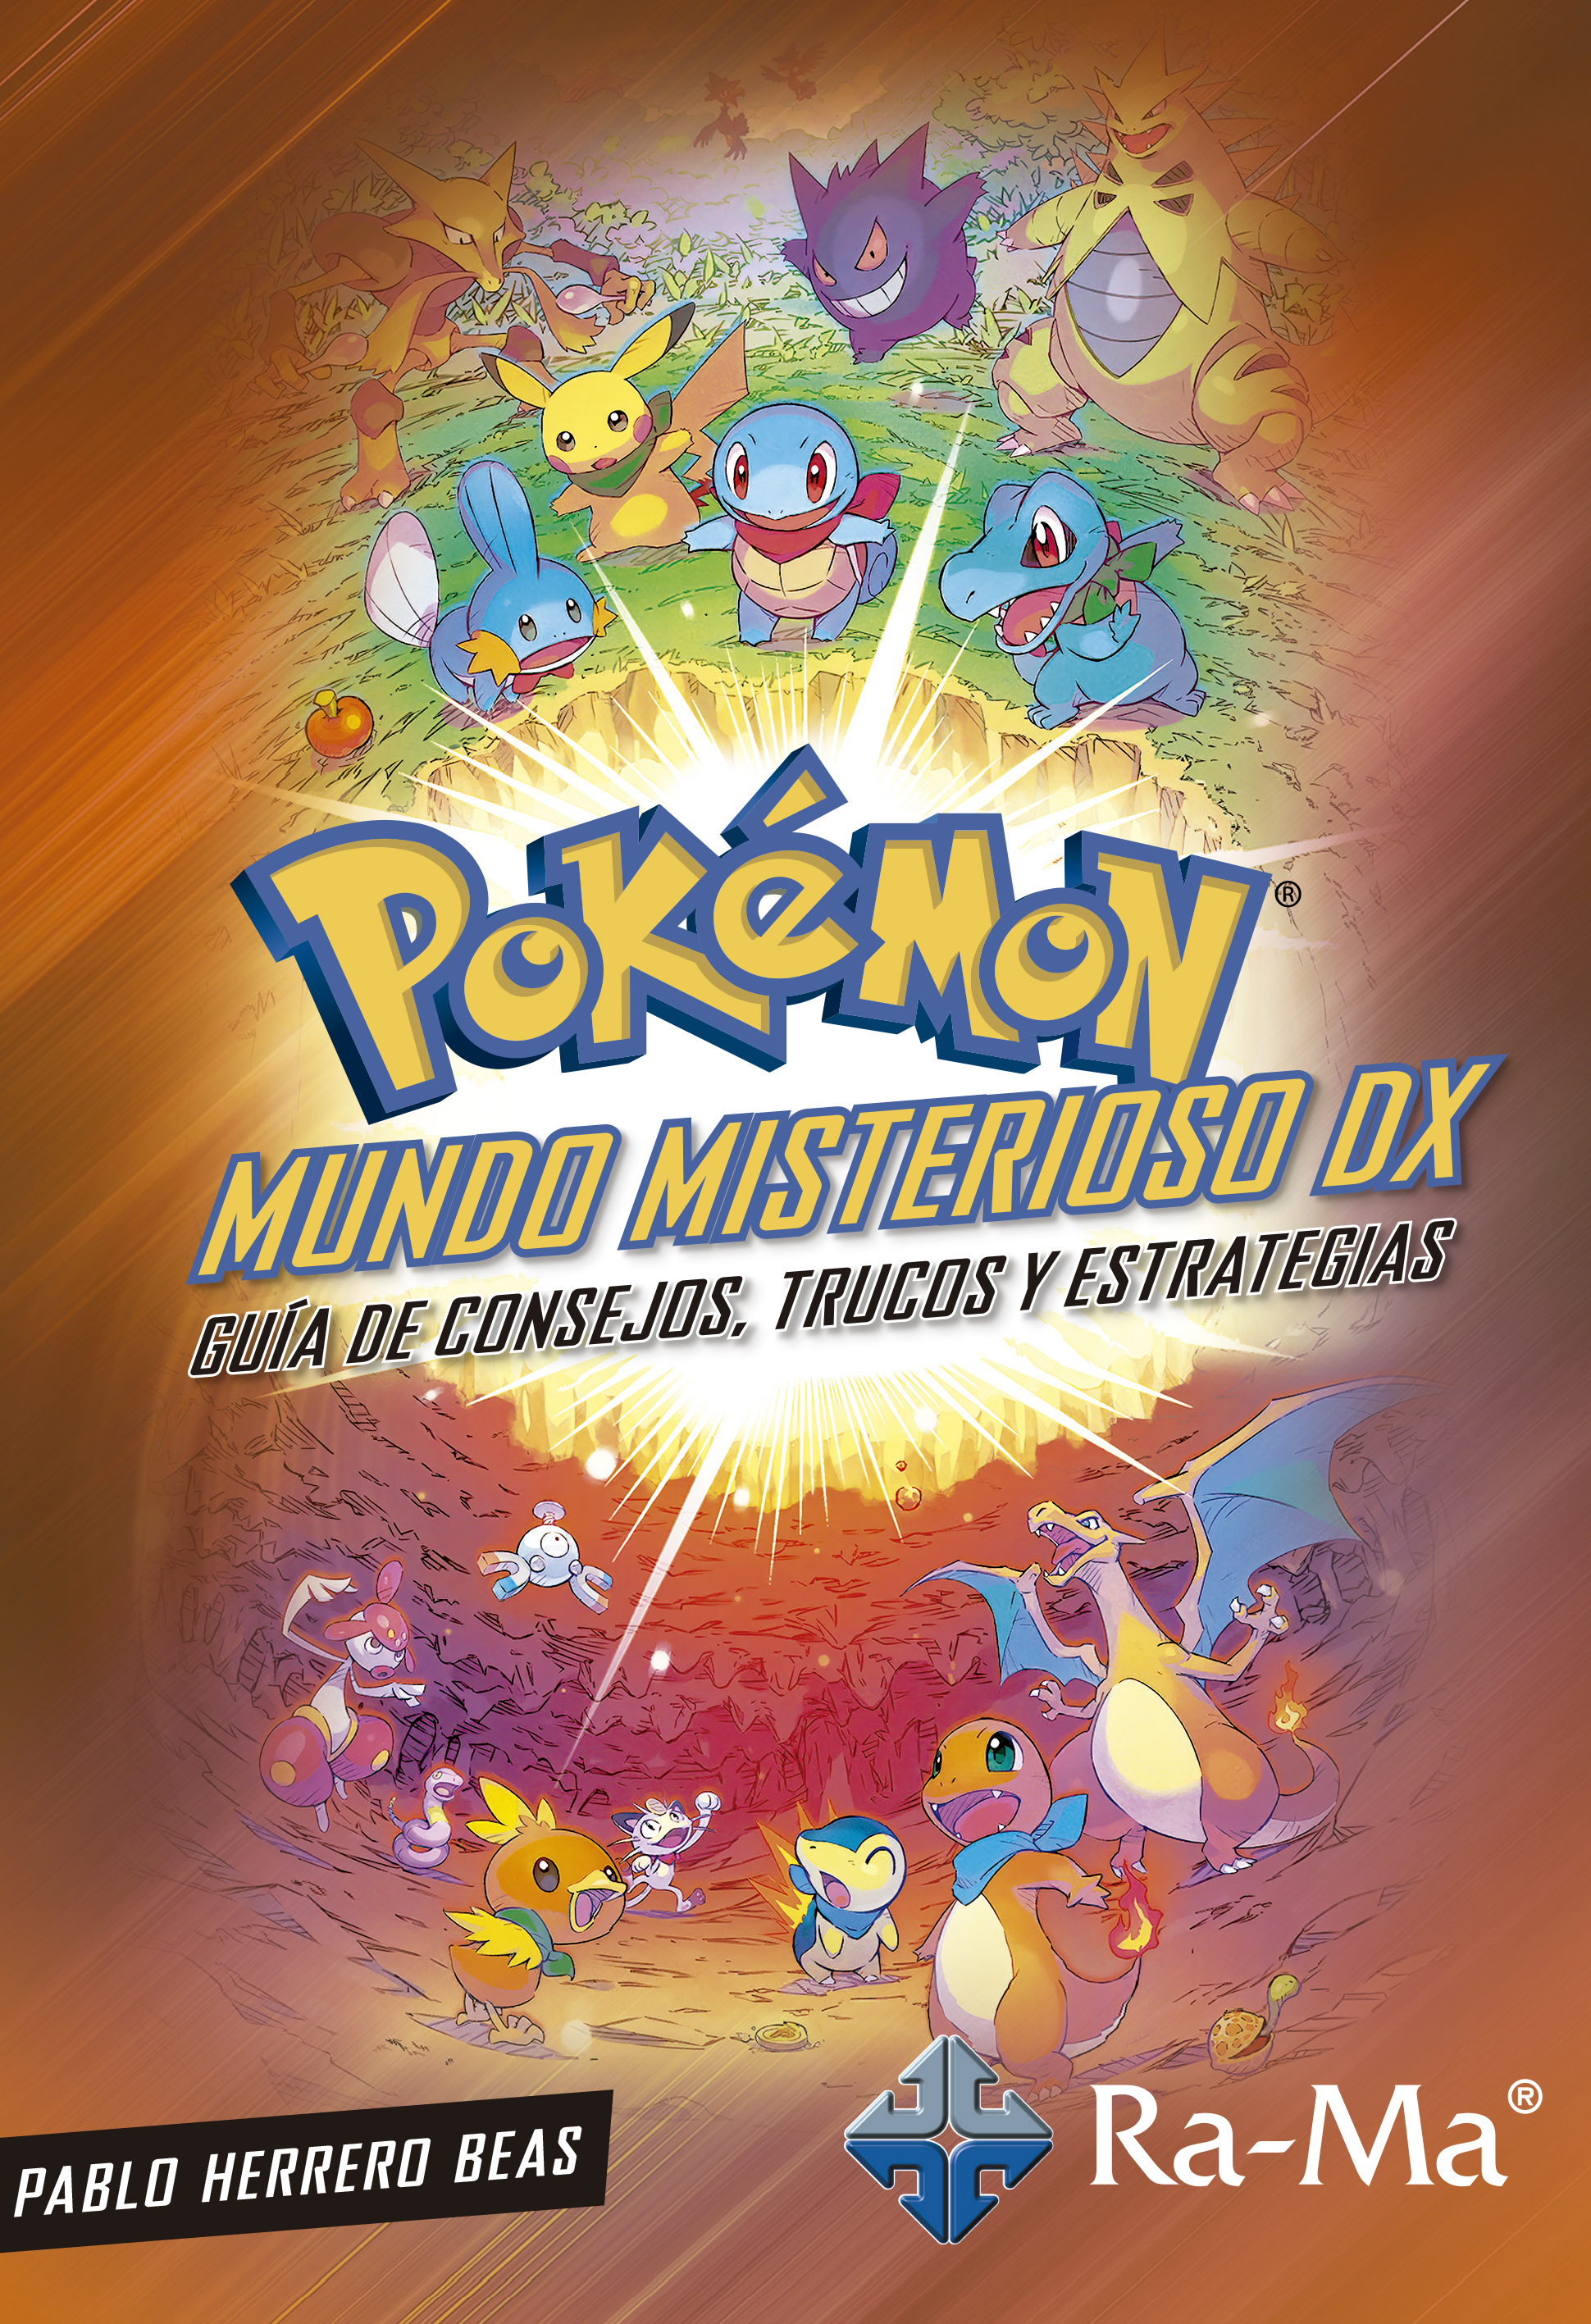 Pokémon Masters Poster  Pokemon mundo misterioso, Cosas de pokemon, Pokemon